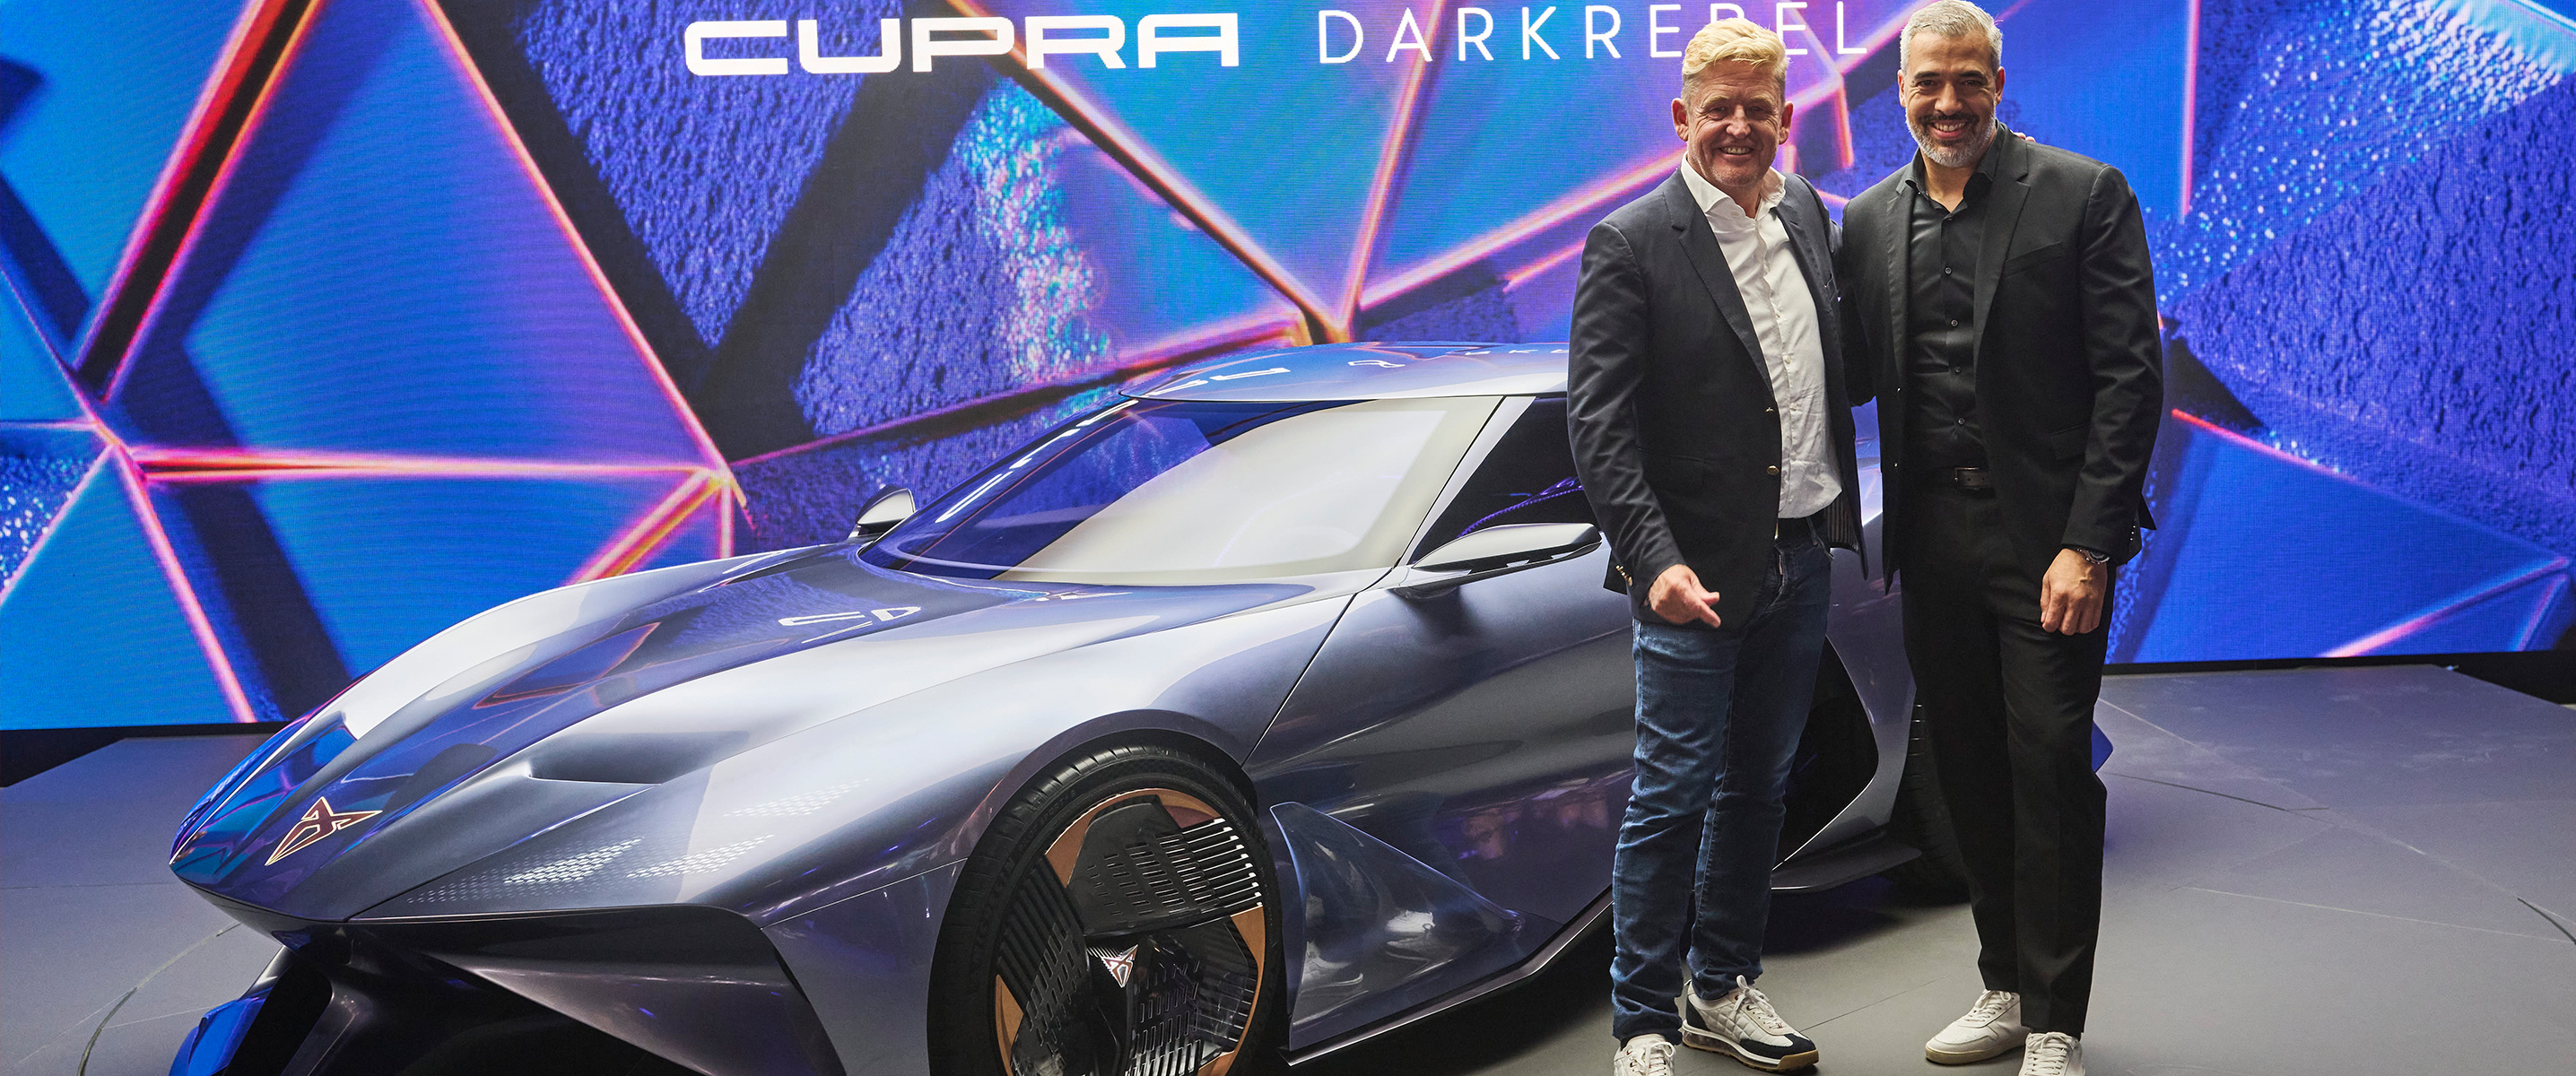 Η CUPRA παρουσιάζει το πρωτότυπο DarkRebel στο κοινό, σημειώνοντας παράλληλα εξαιρετικά αποτελέσματα πωλήσεων 